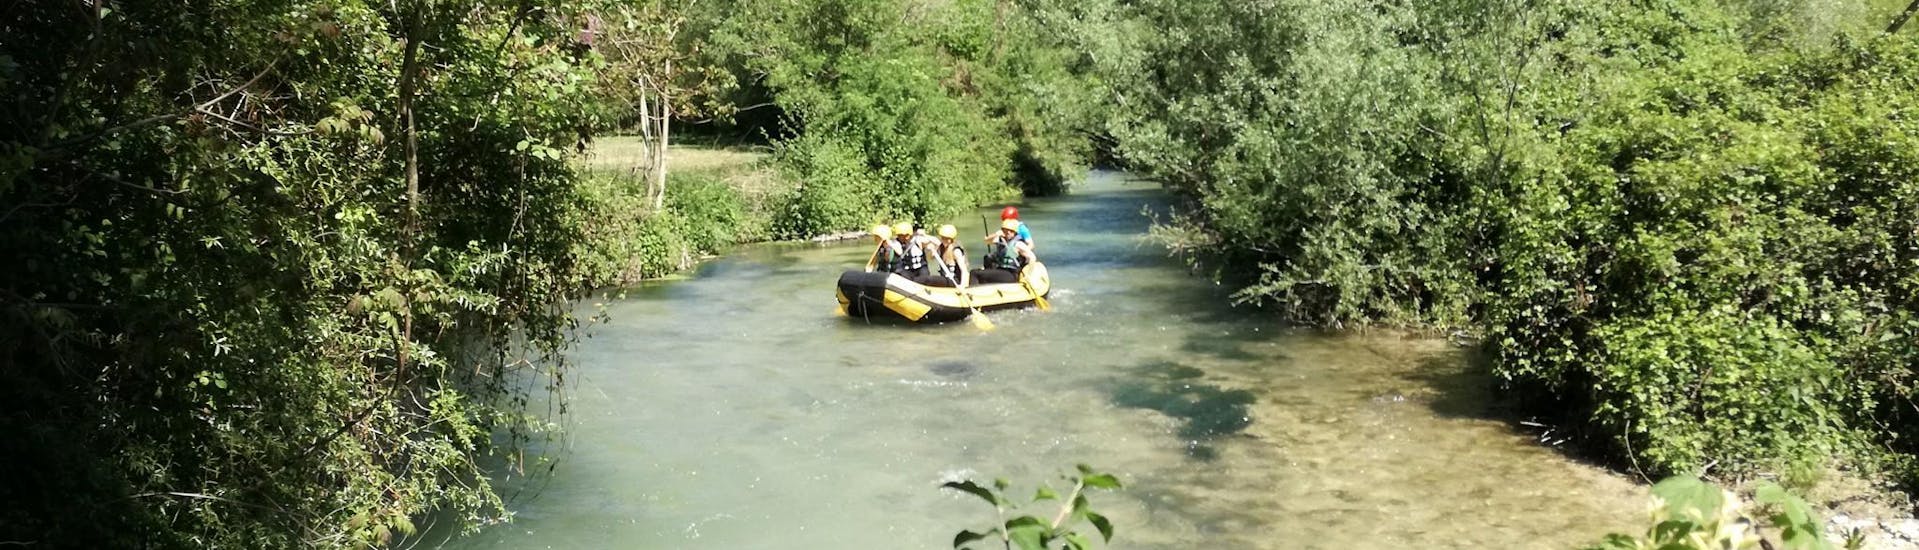 Rafting facile à Vallo di Nera - Nera.